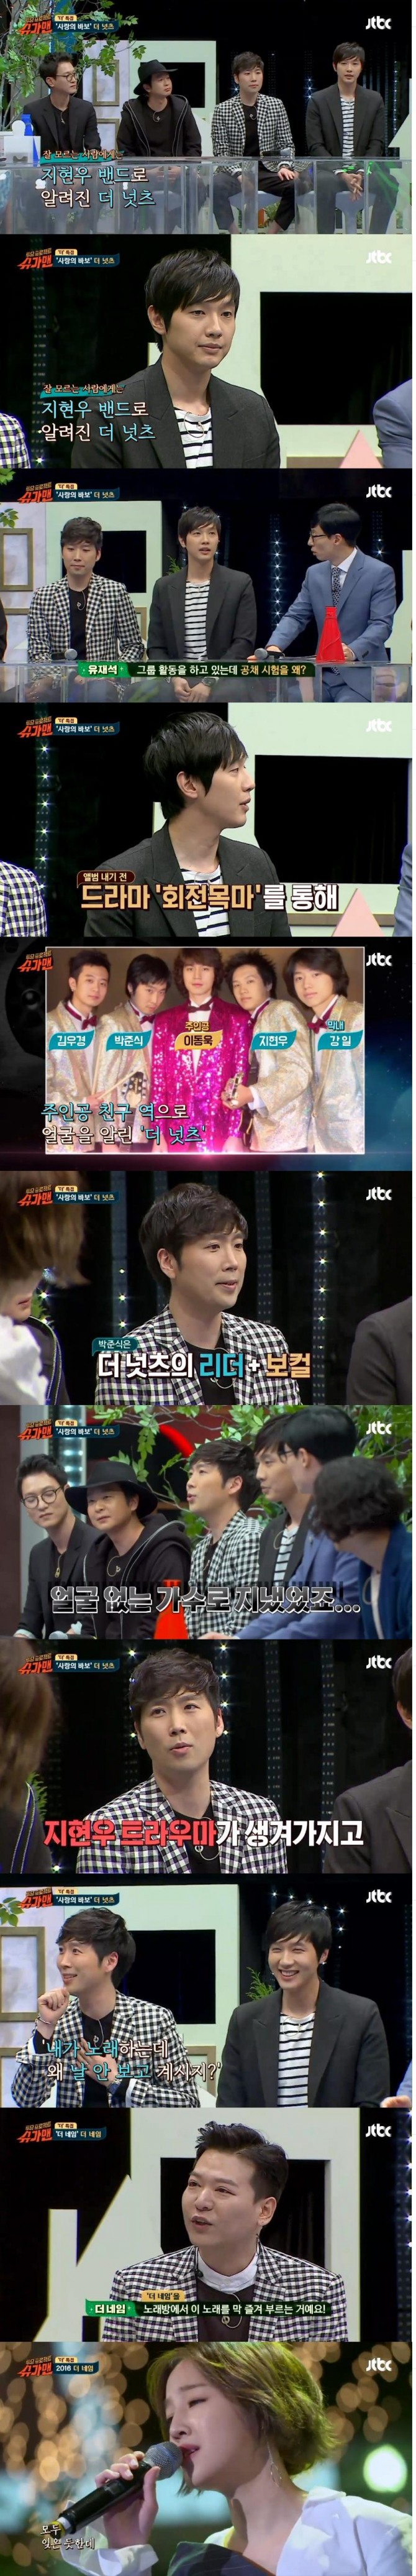 12일 밤 방송된 JTBC '투유 프로젝트 슈가맨'에서는  가수 '더 네임'과 밴드 '더 넛츠'가 출연해 슈가송으로 '더네임'과 '사랑의 바보'를 들려줬다. /사진=JTBC 방송 캡처